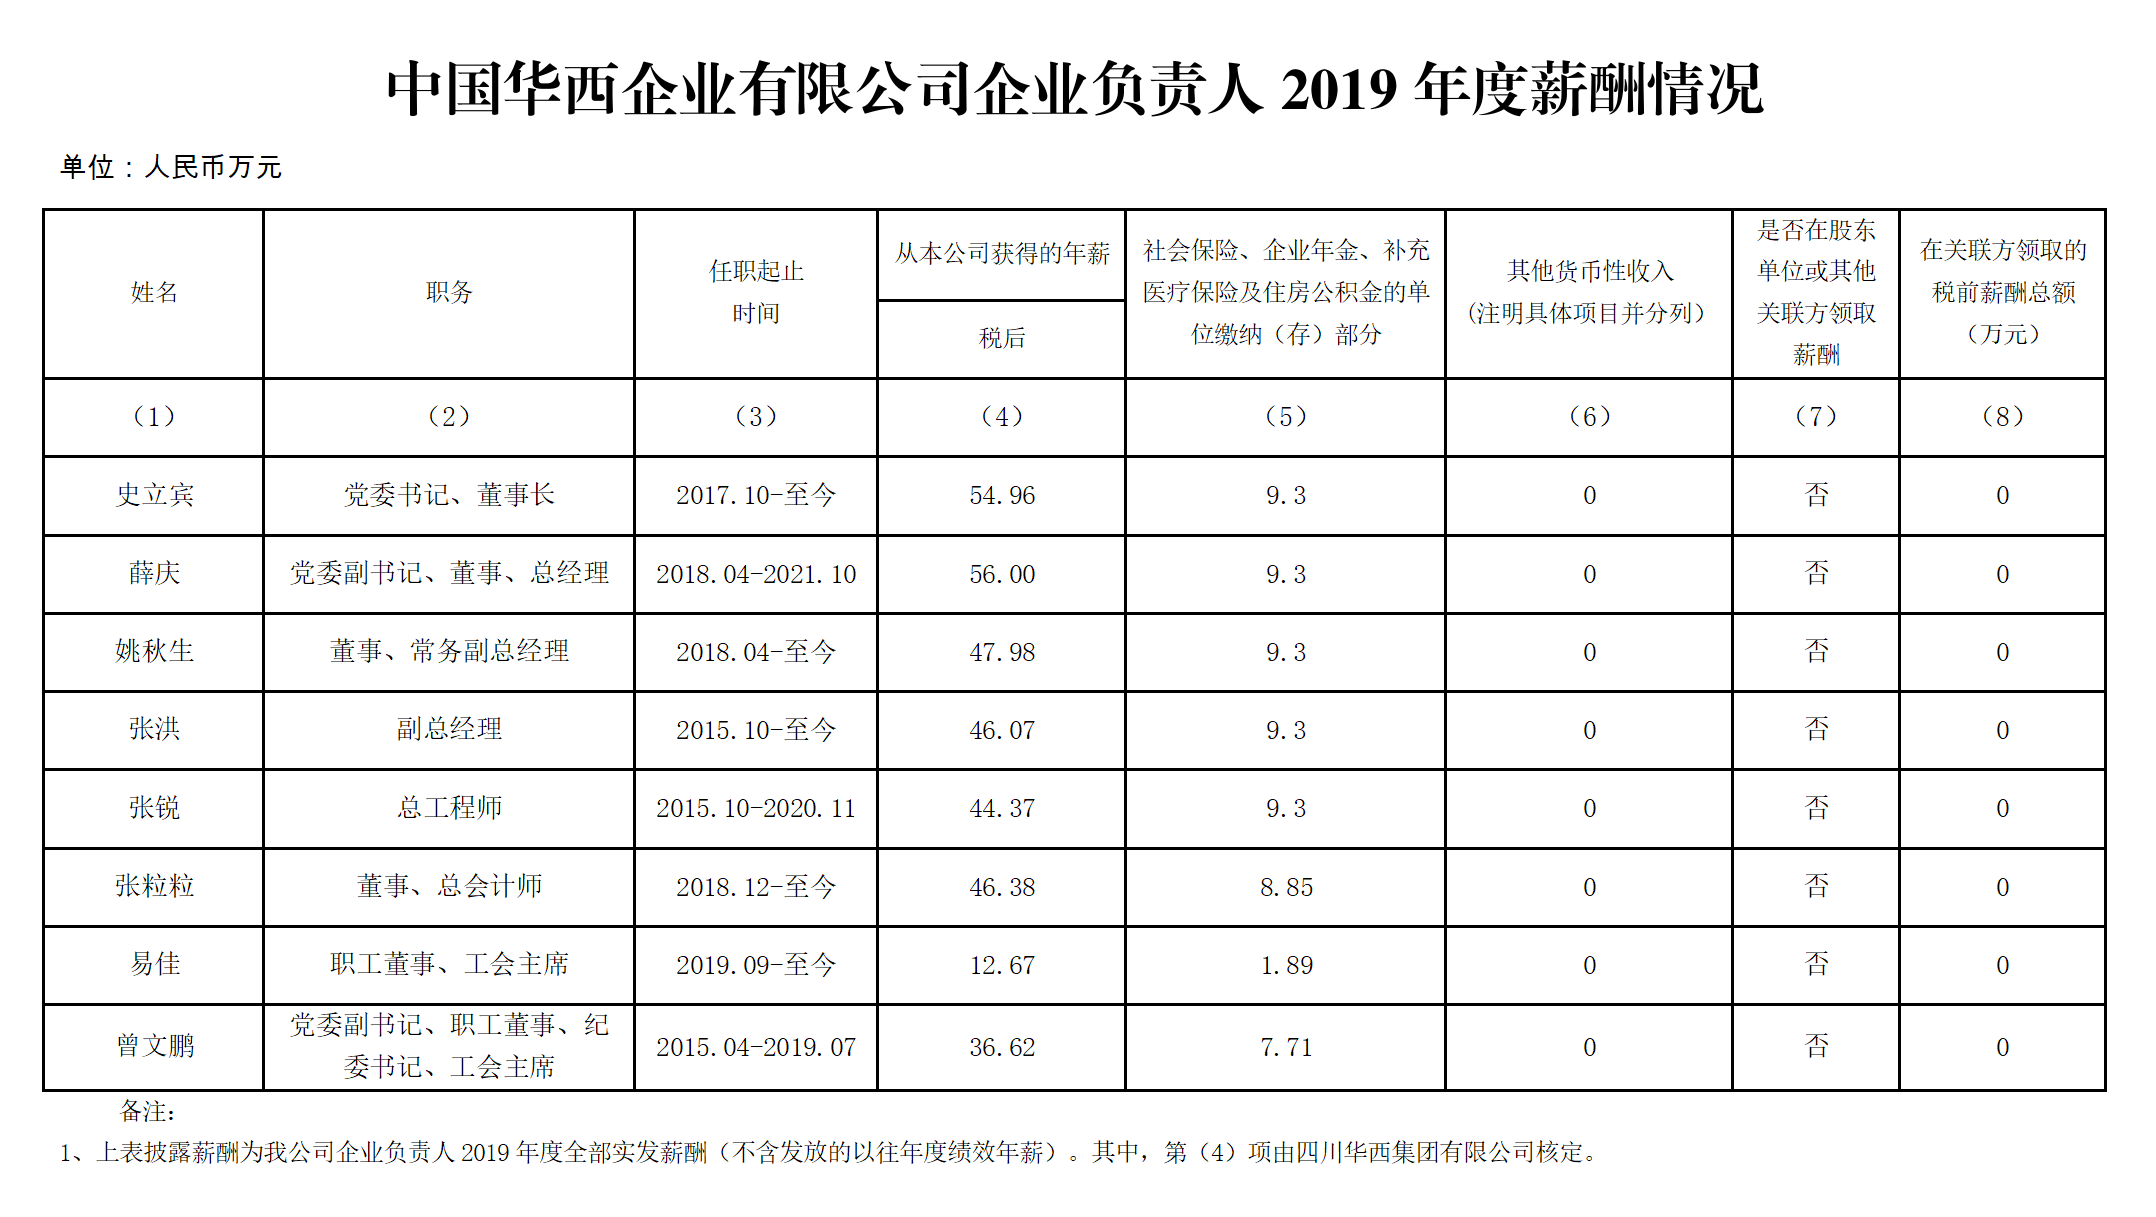 中国华西企业有限公司企业负责人2019年度薪酬情况.png